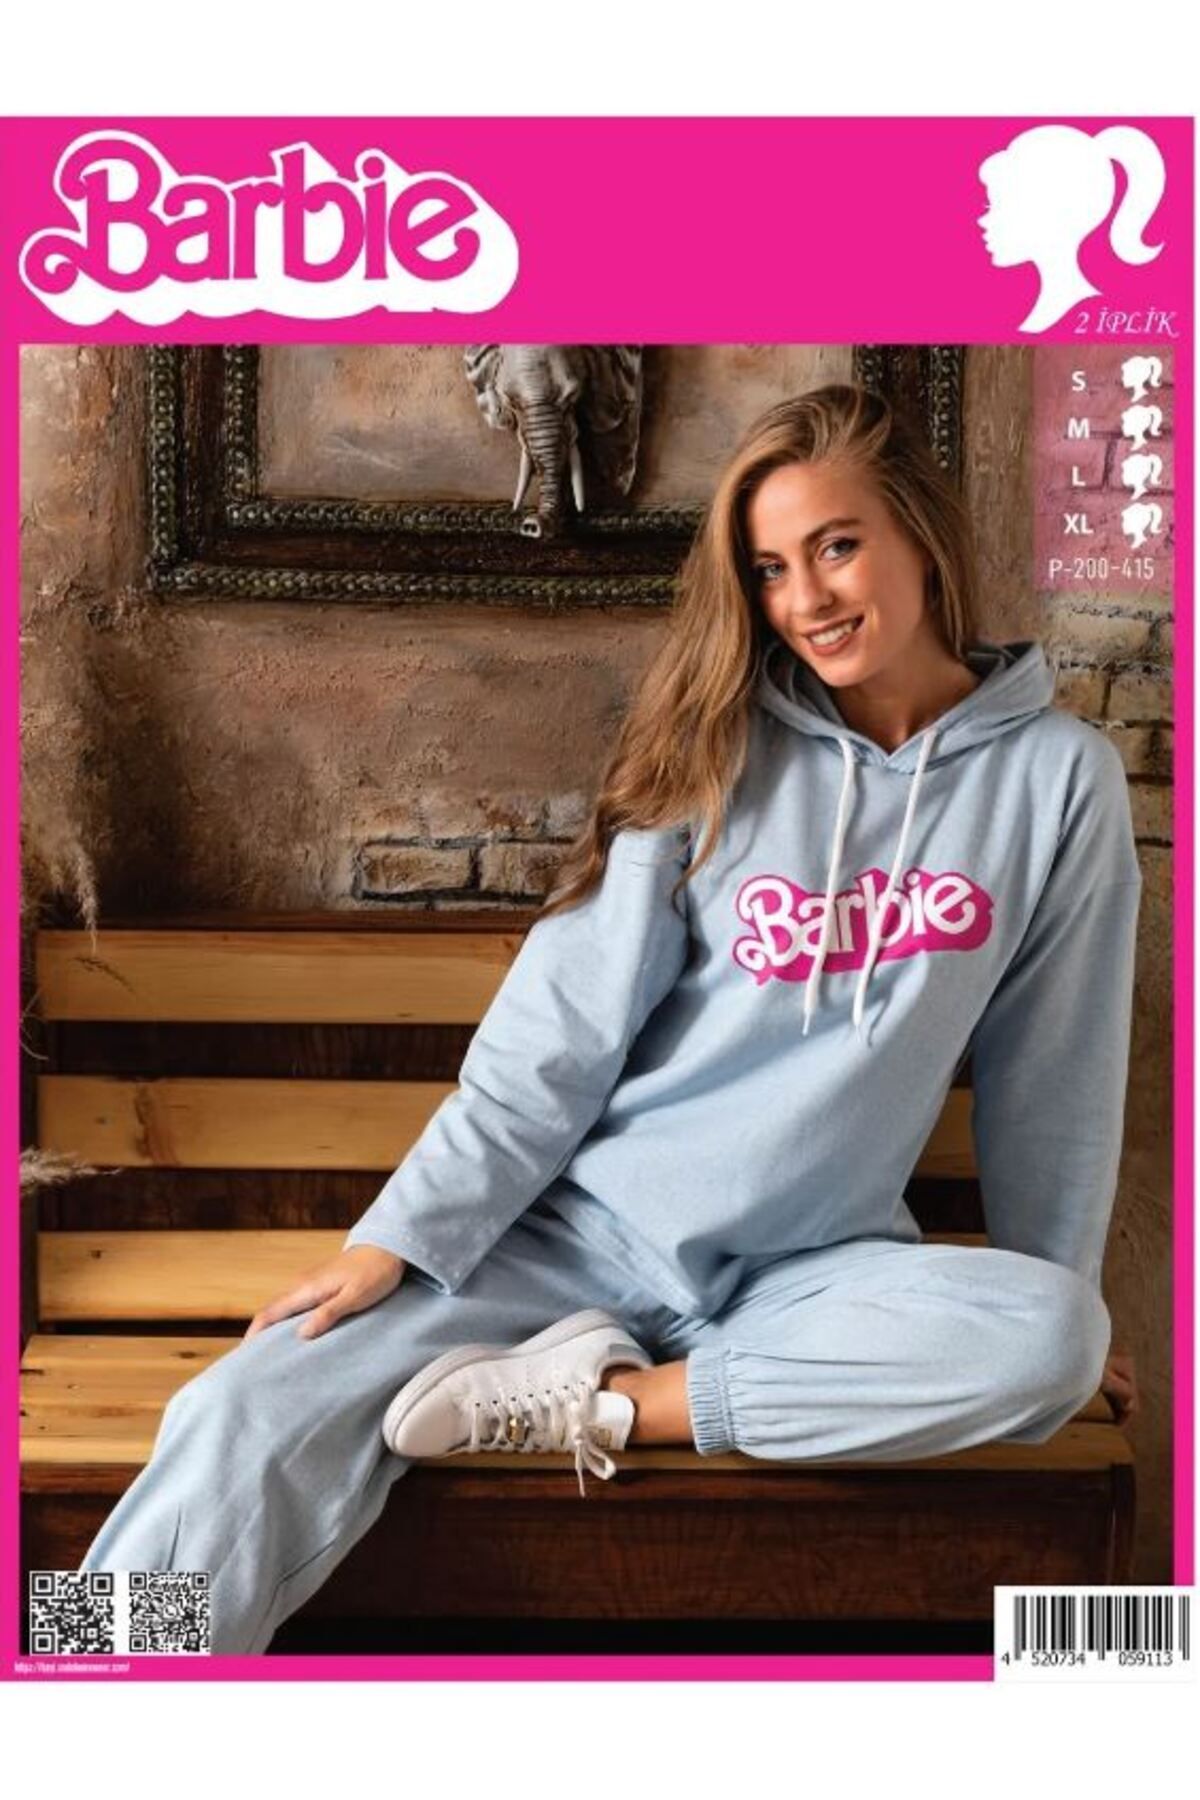 Sude P-200-415 Barbie 2 Iplik Kapüşonlu Kadın Pijama Takımı